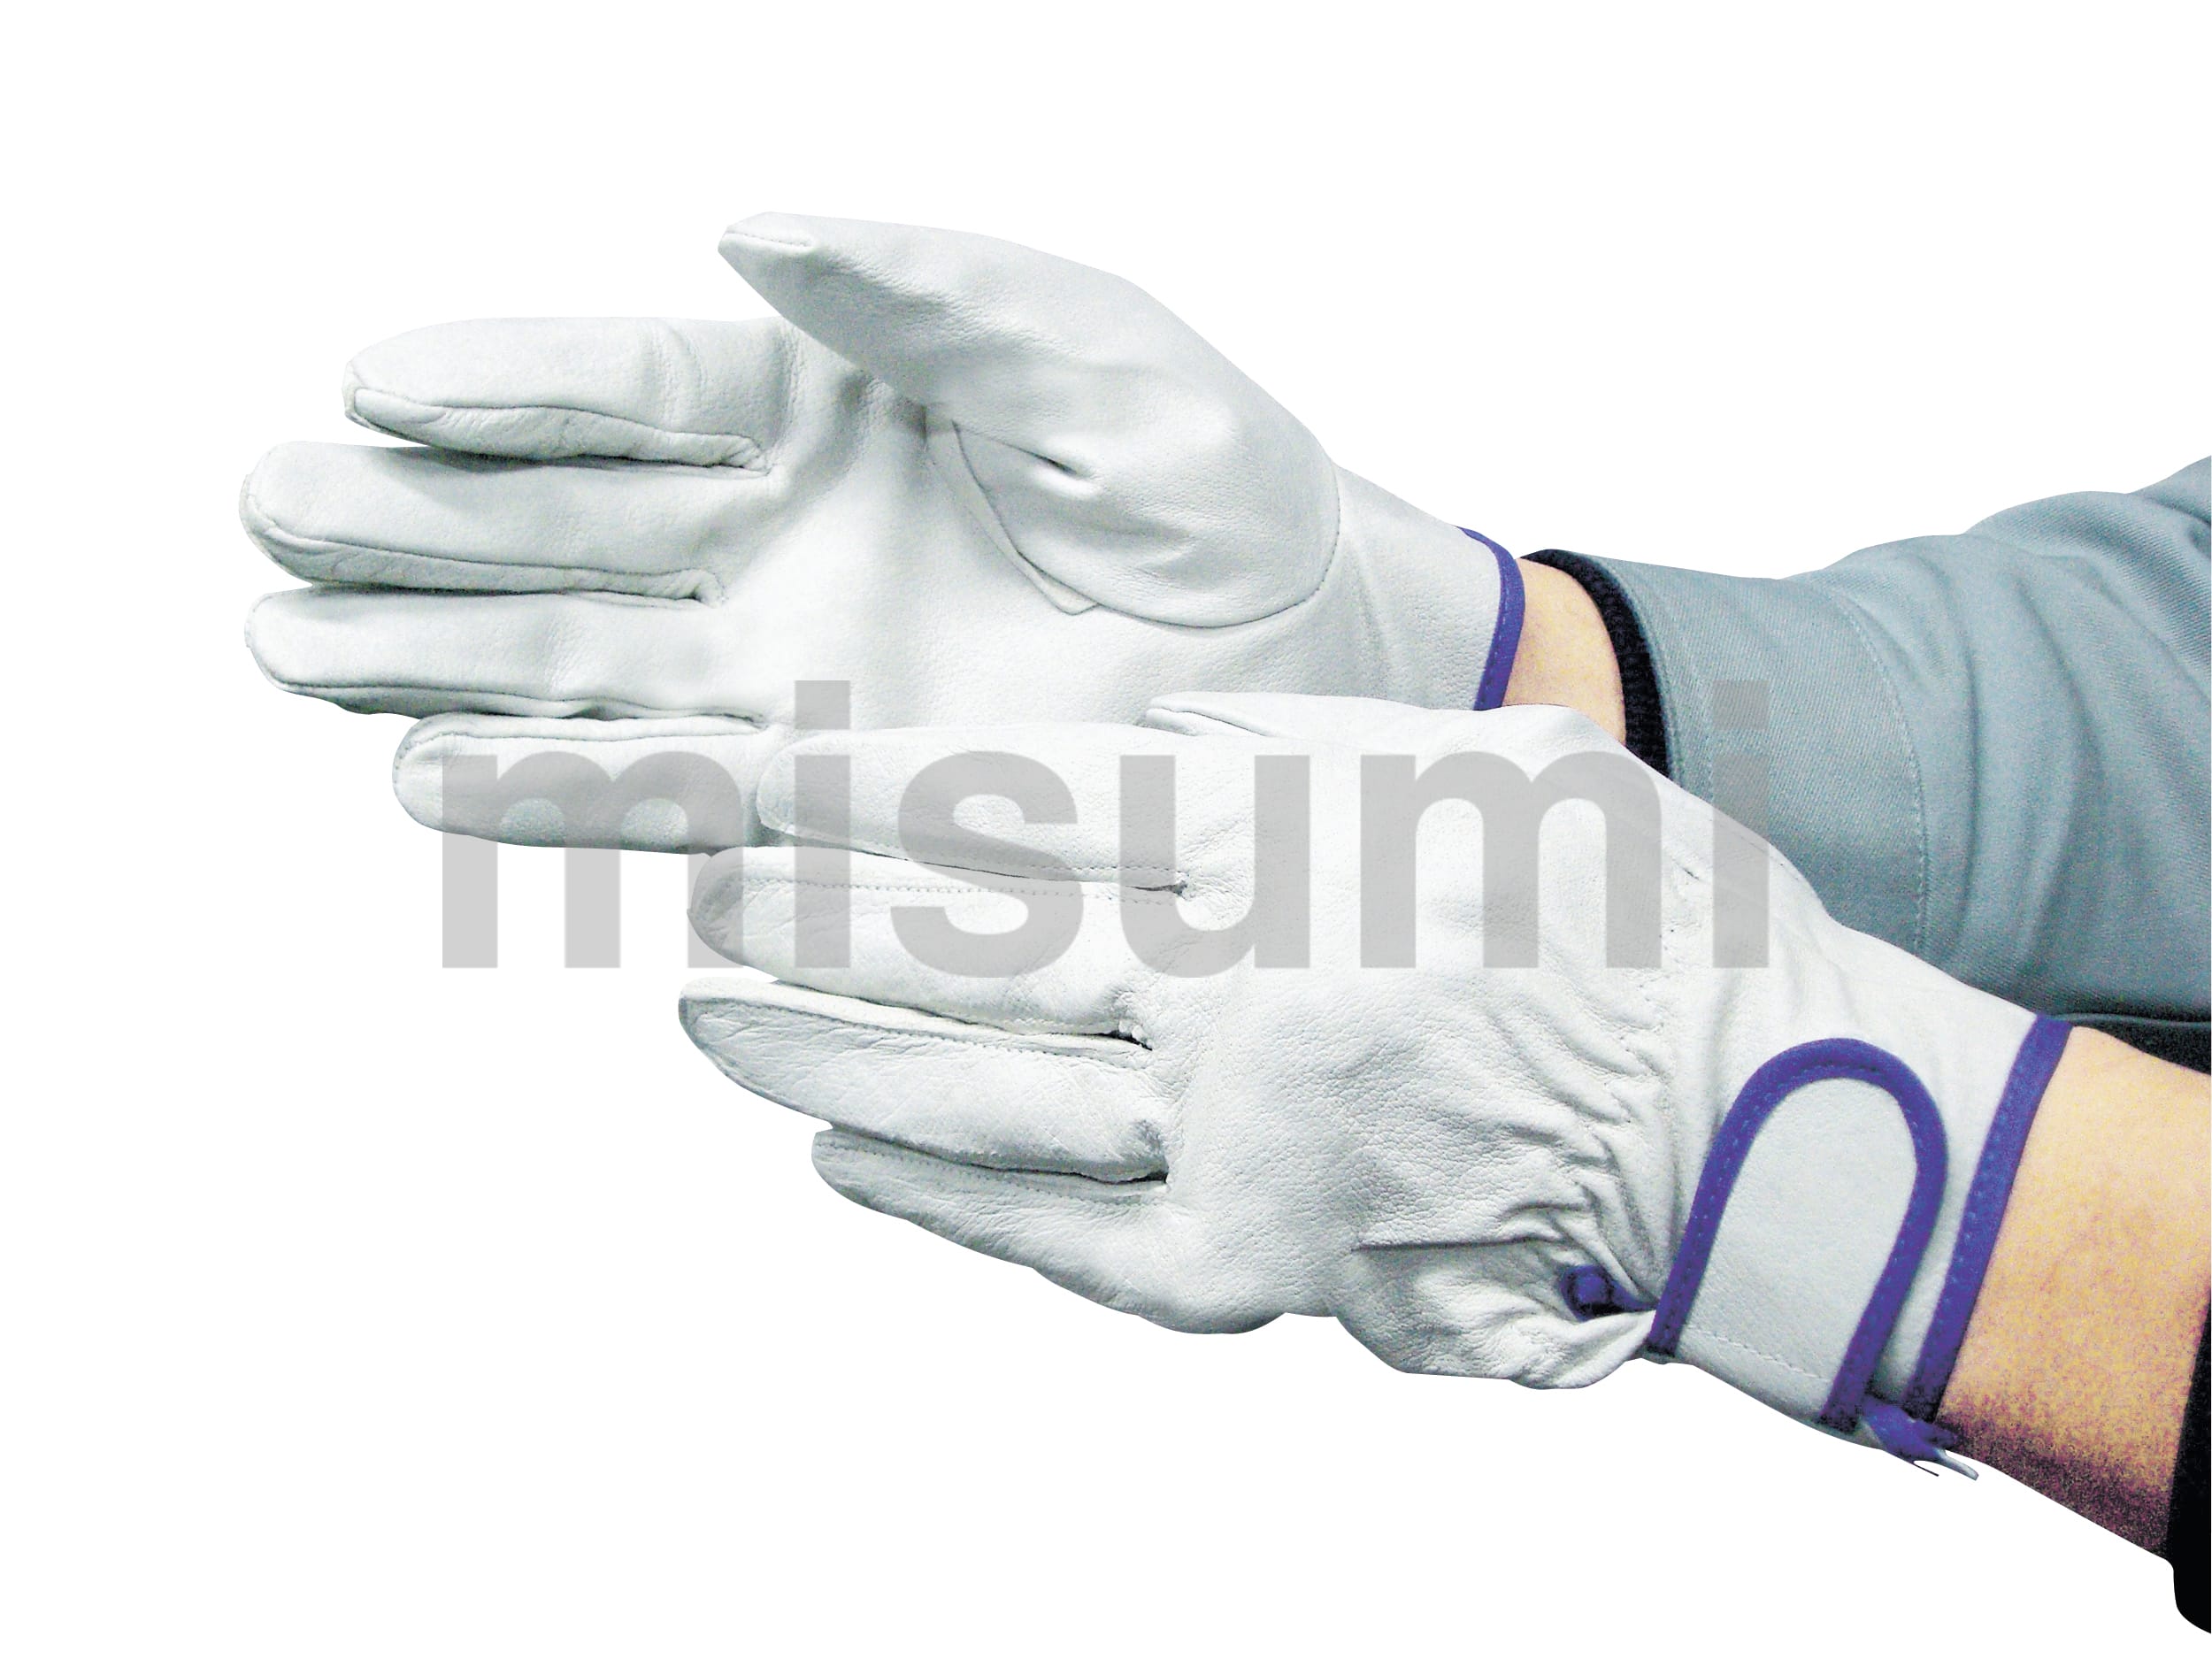 2-234 豚革手袋 甲メリMG付 2双組 富士グローブ MISUMI(ミスミ)